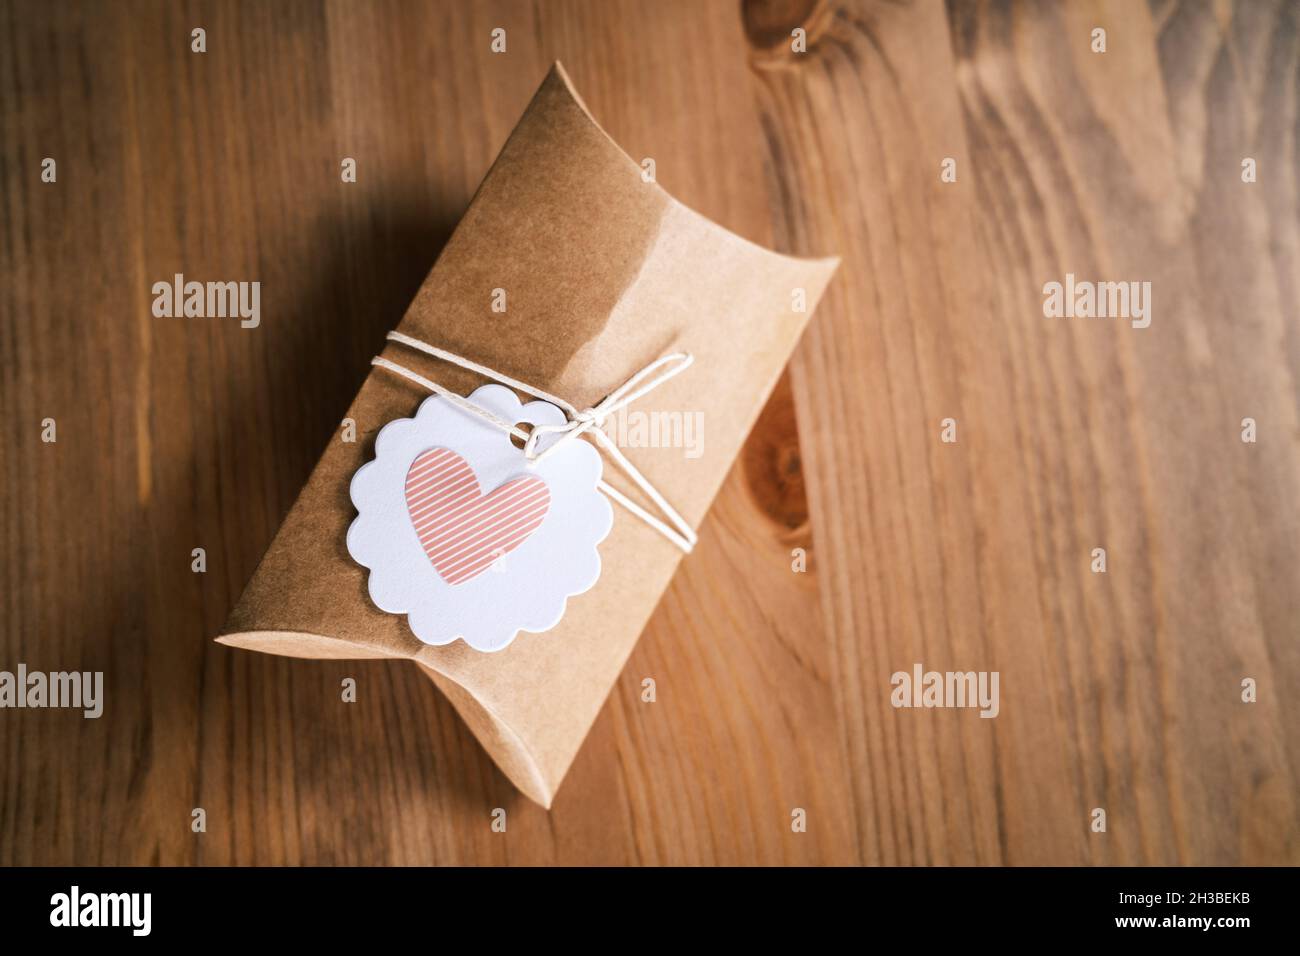 Petit cadeau enveloppé dans du papier artisanal sur fond en bois.Cadeau  fait maison, forme de coeur sur l'étiquette cadeau.Emballage de cadeaux  durable à l'aide de papier recyclé Photo Stock - Alamy